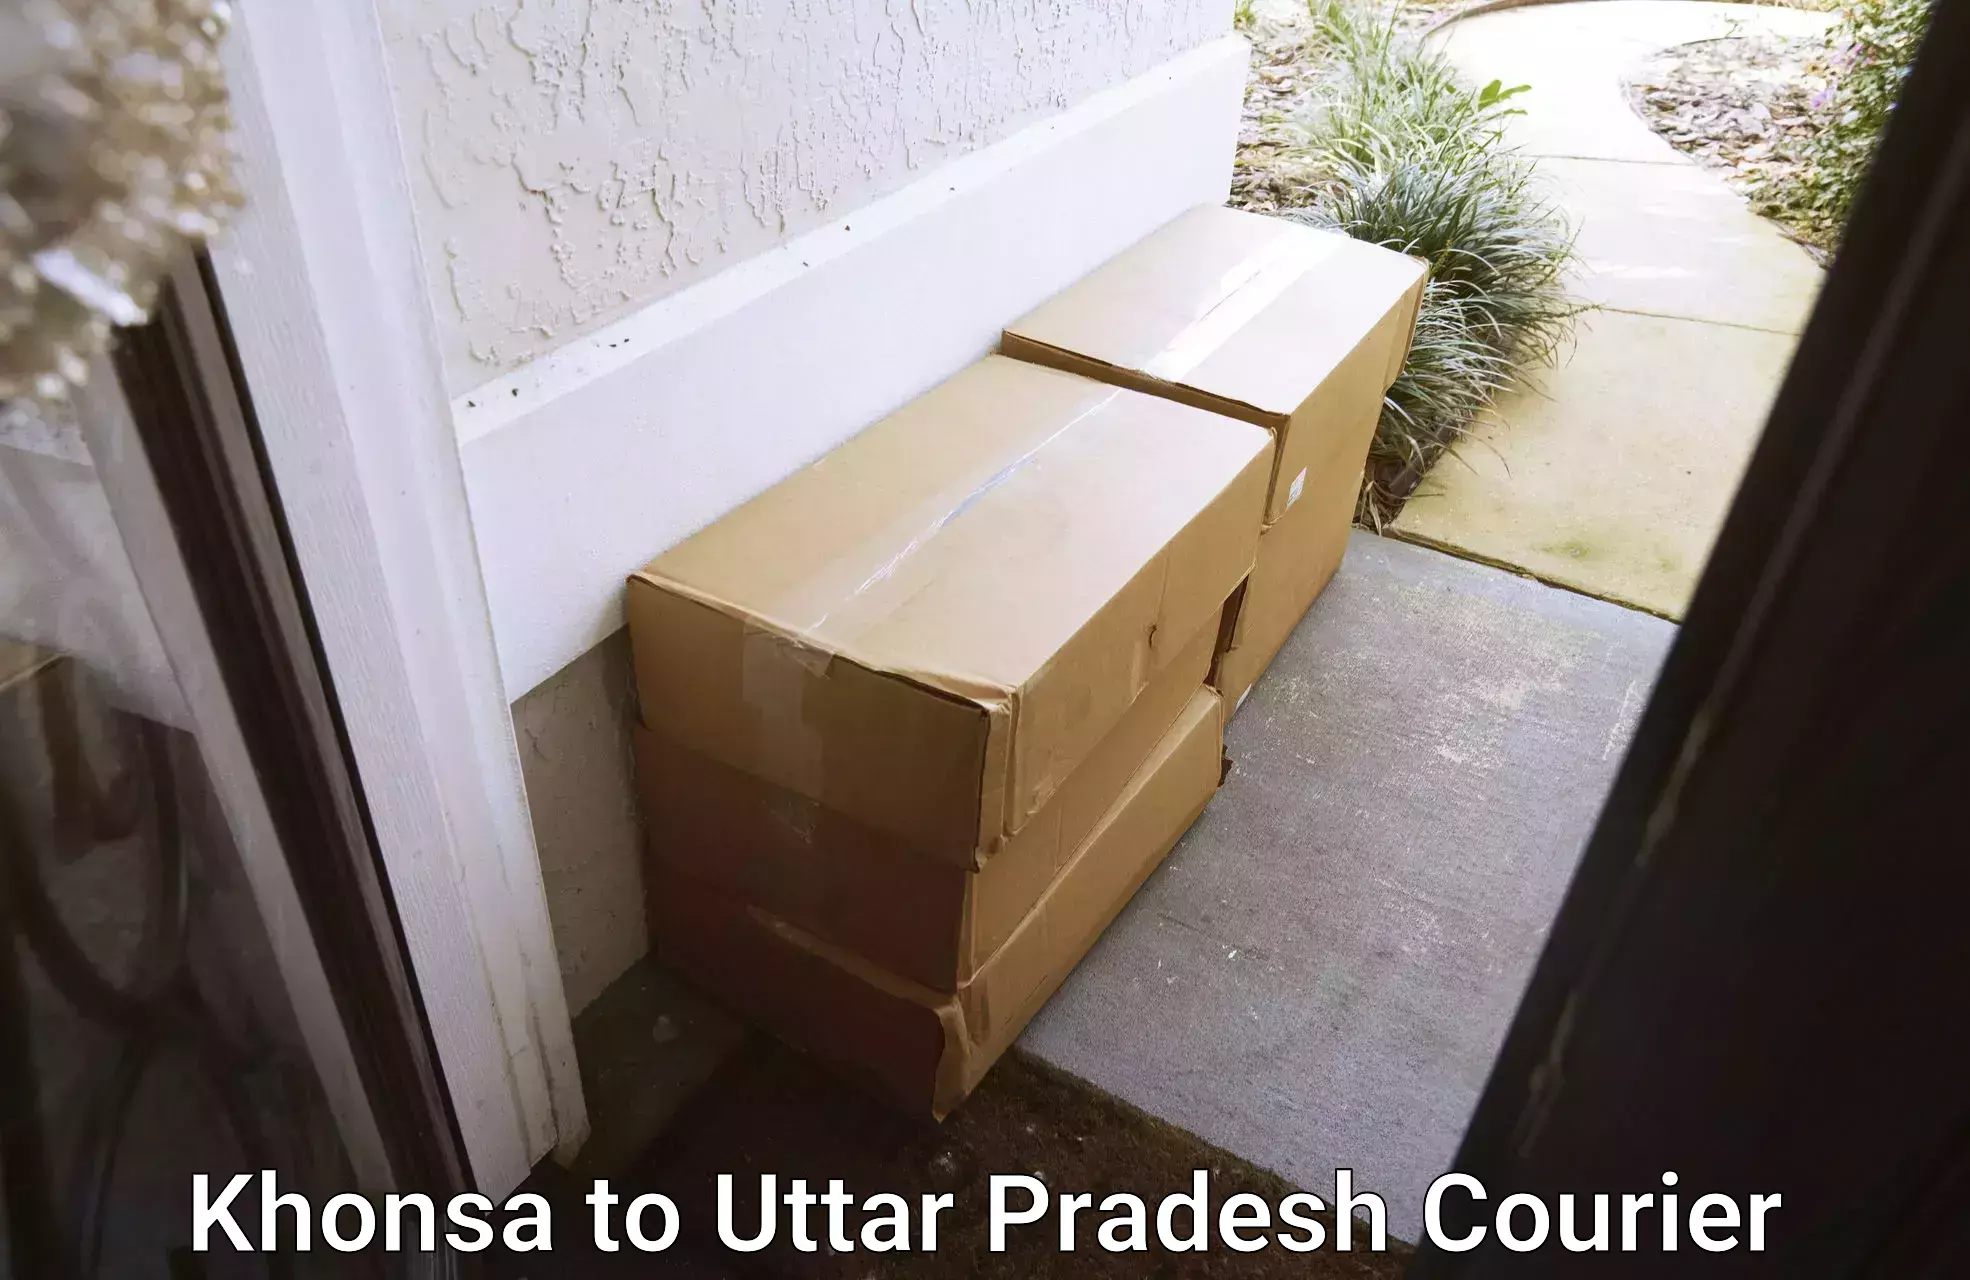 Heavy parcel delivery Khonsa to Uttar Pradesh